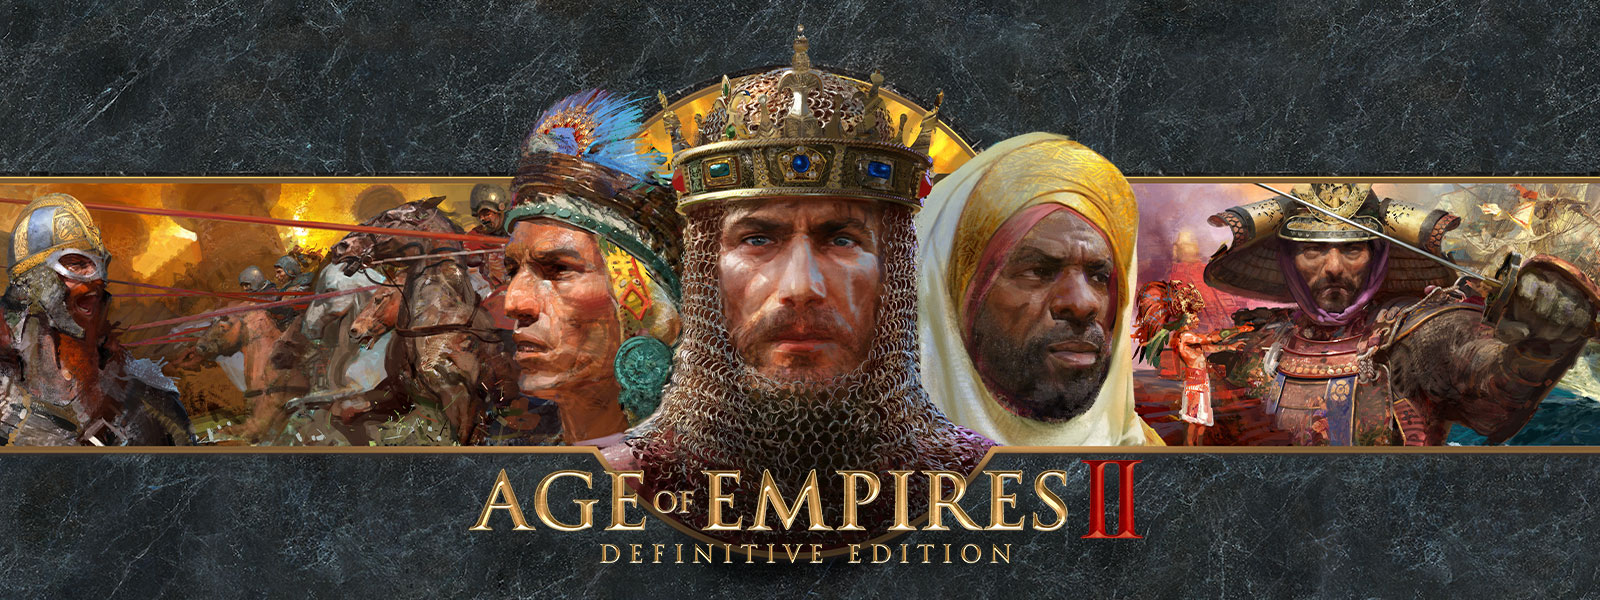 Age of Empires II: Definitive Edition-logo op een grijze leistenen achtergrond met oorlogsleiders en hun legers